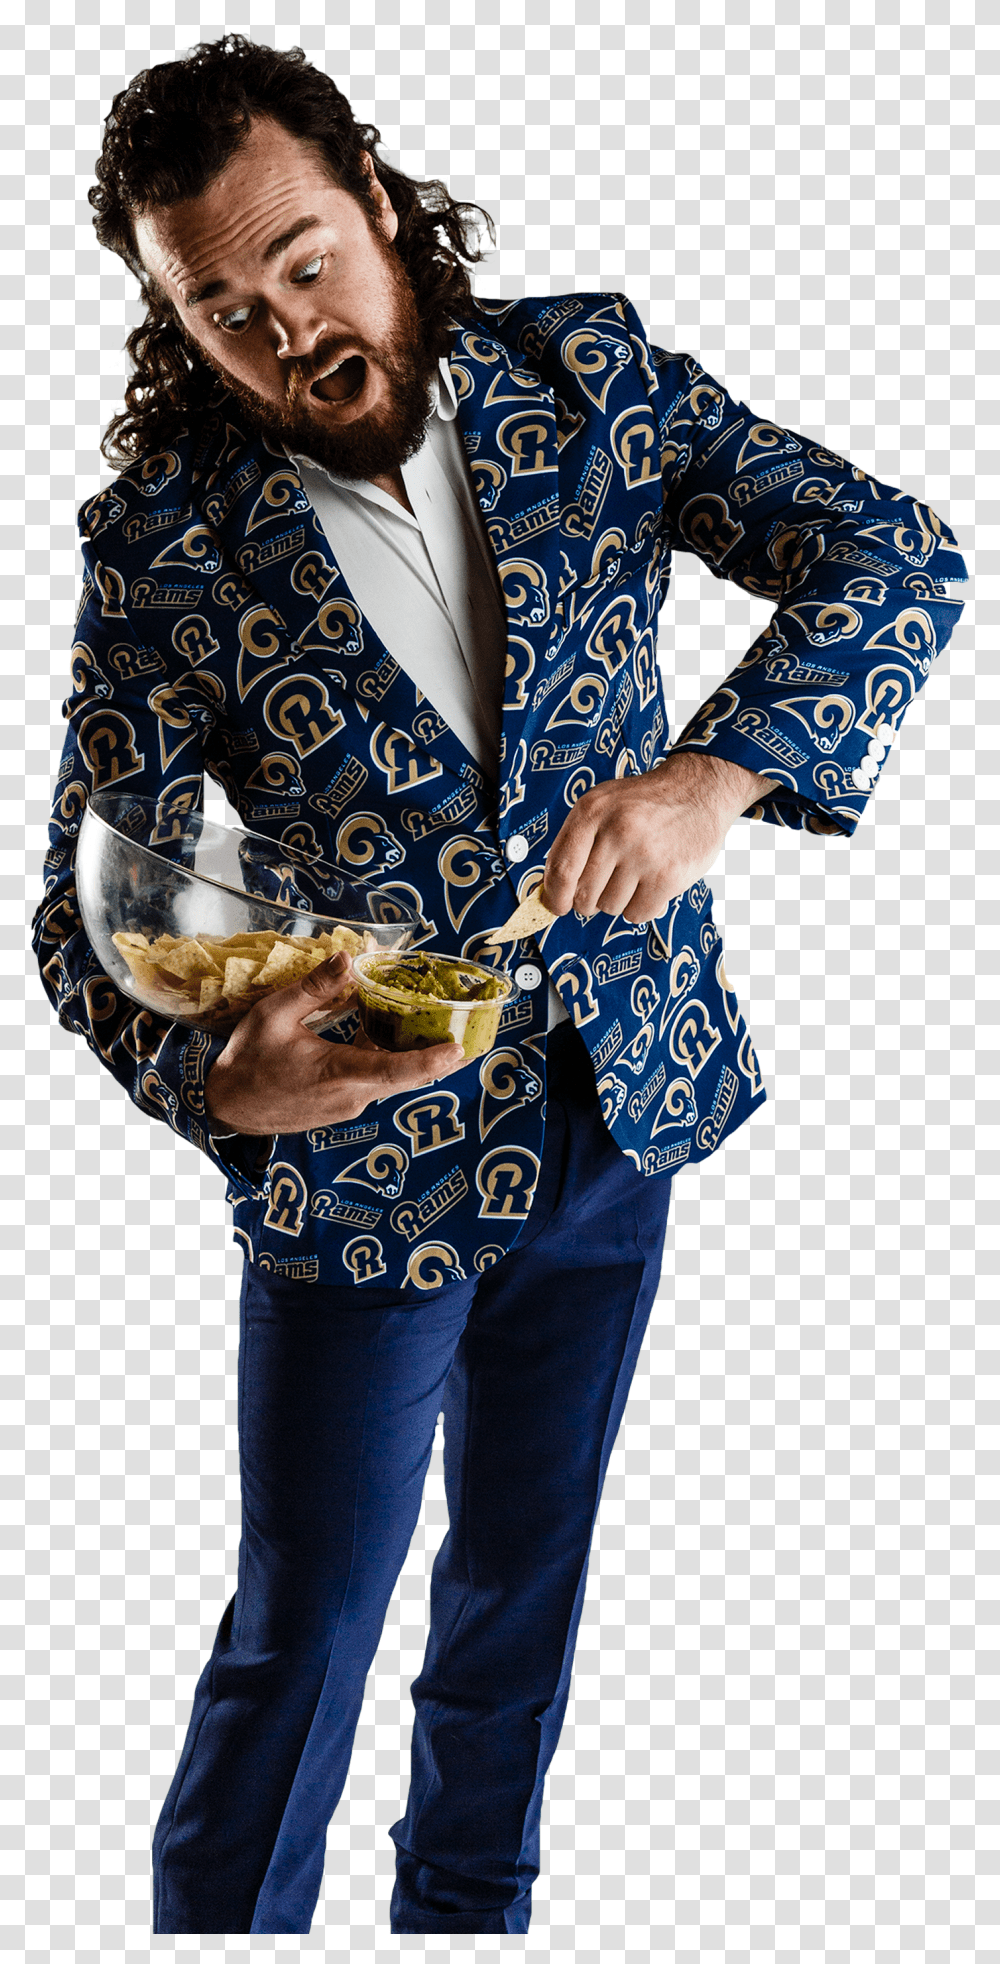 Dallas Cowboys Suit Jacket Transparent Png